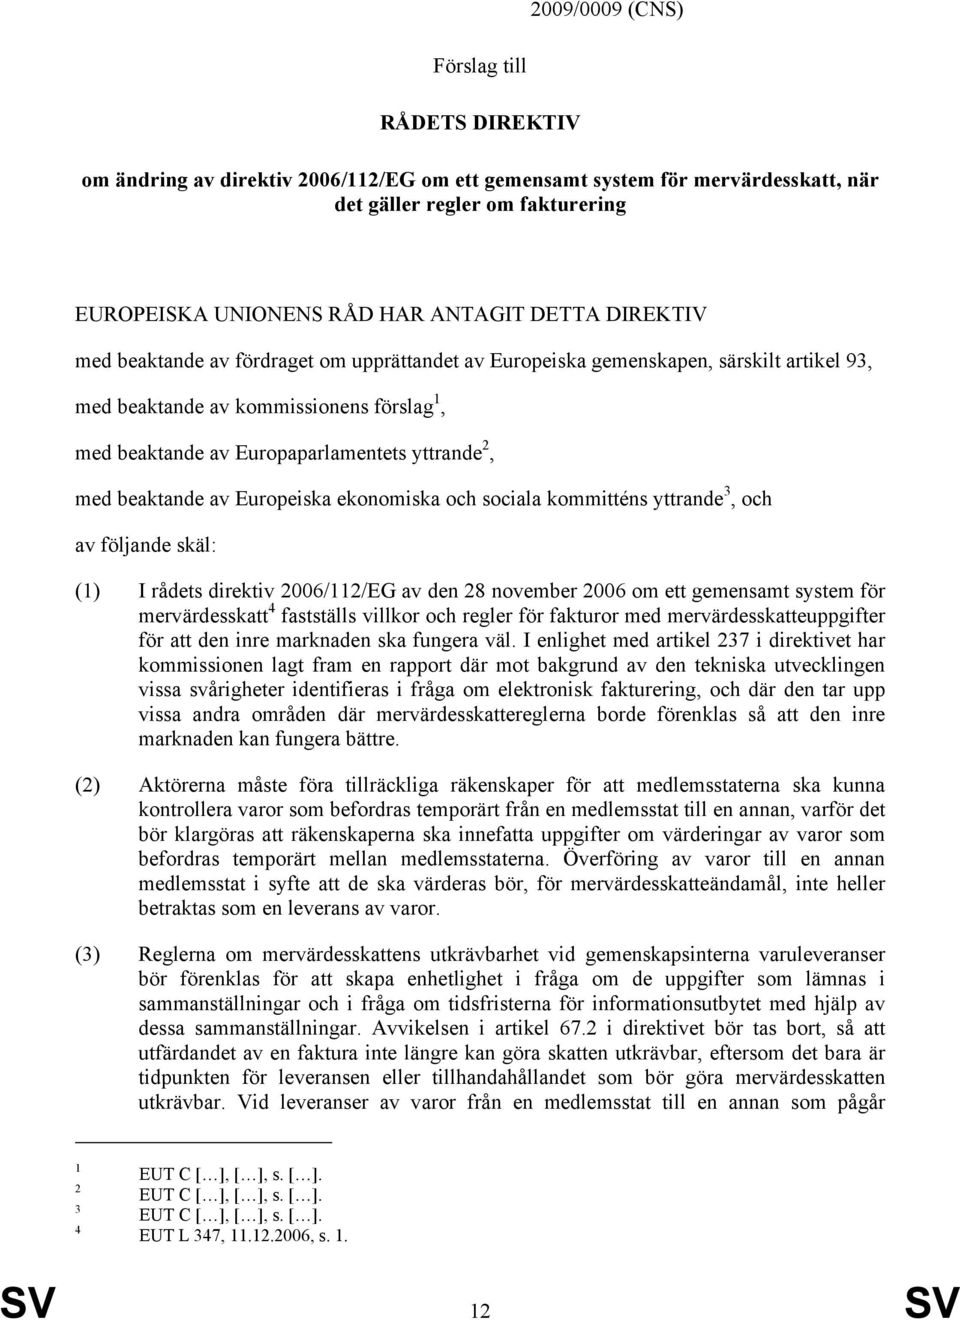 beaktande av Europeiska ekonomiska och sociala kommitténs yttrande 3, och av följande skäl: (1) I rådets direktiv 2006/112/EG av den 28 november 2006 om ett gemensamt system för mervärdesskatt 4